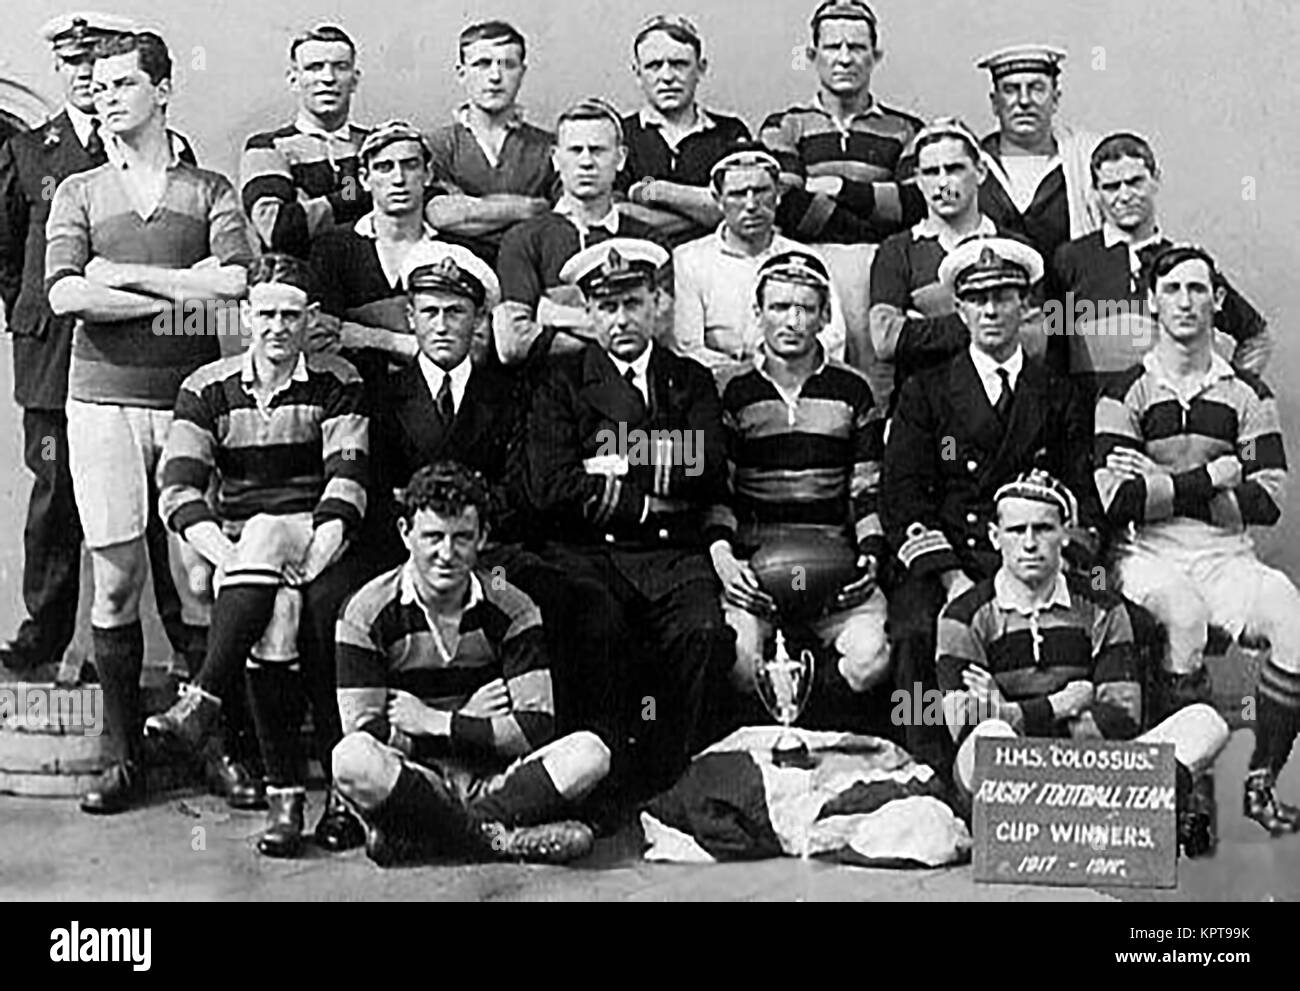 HMS COLOSSUS - il colosso HMS 1917-1918 Rugby football team - i vincitori della Coppa - una corazzata Dreadnought costruita da Scotts di Greenock, Scozia Foto Stock